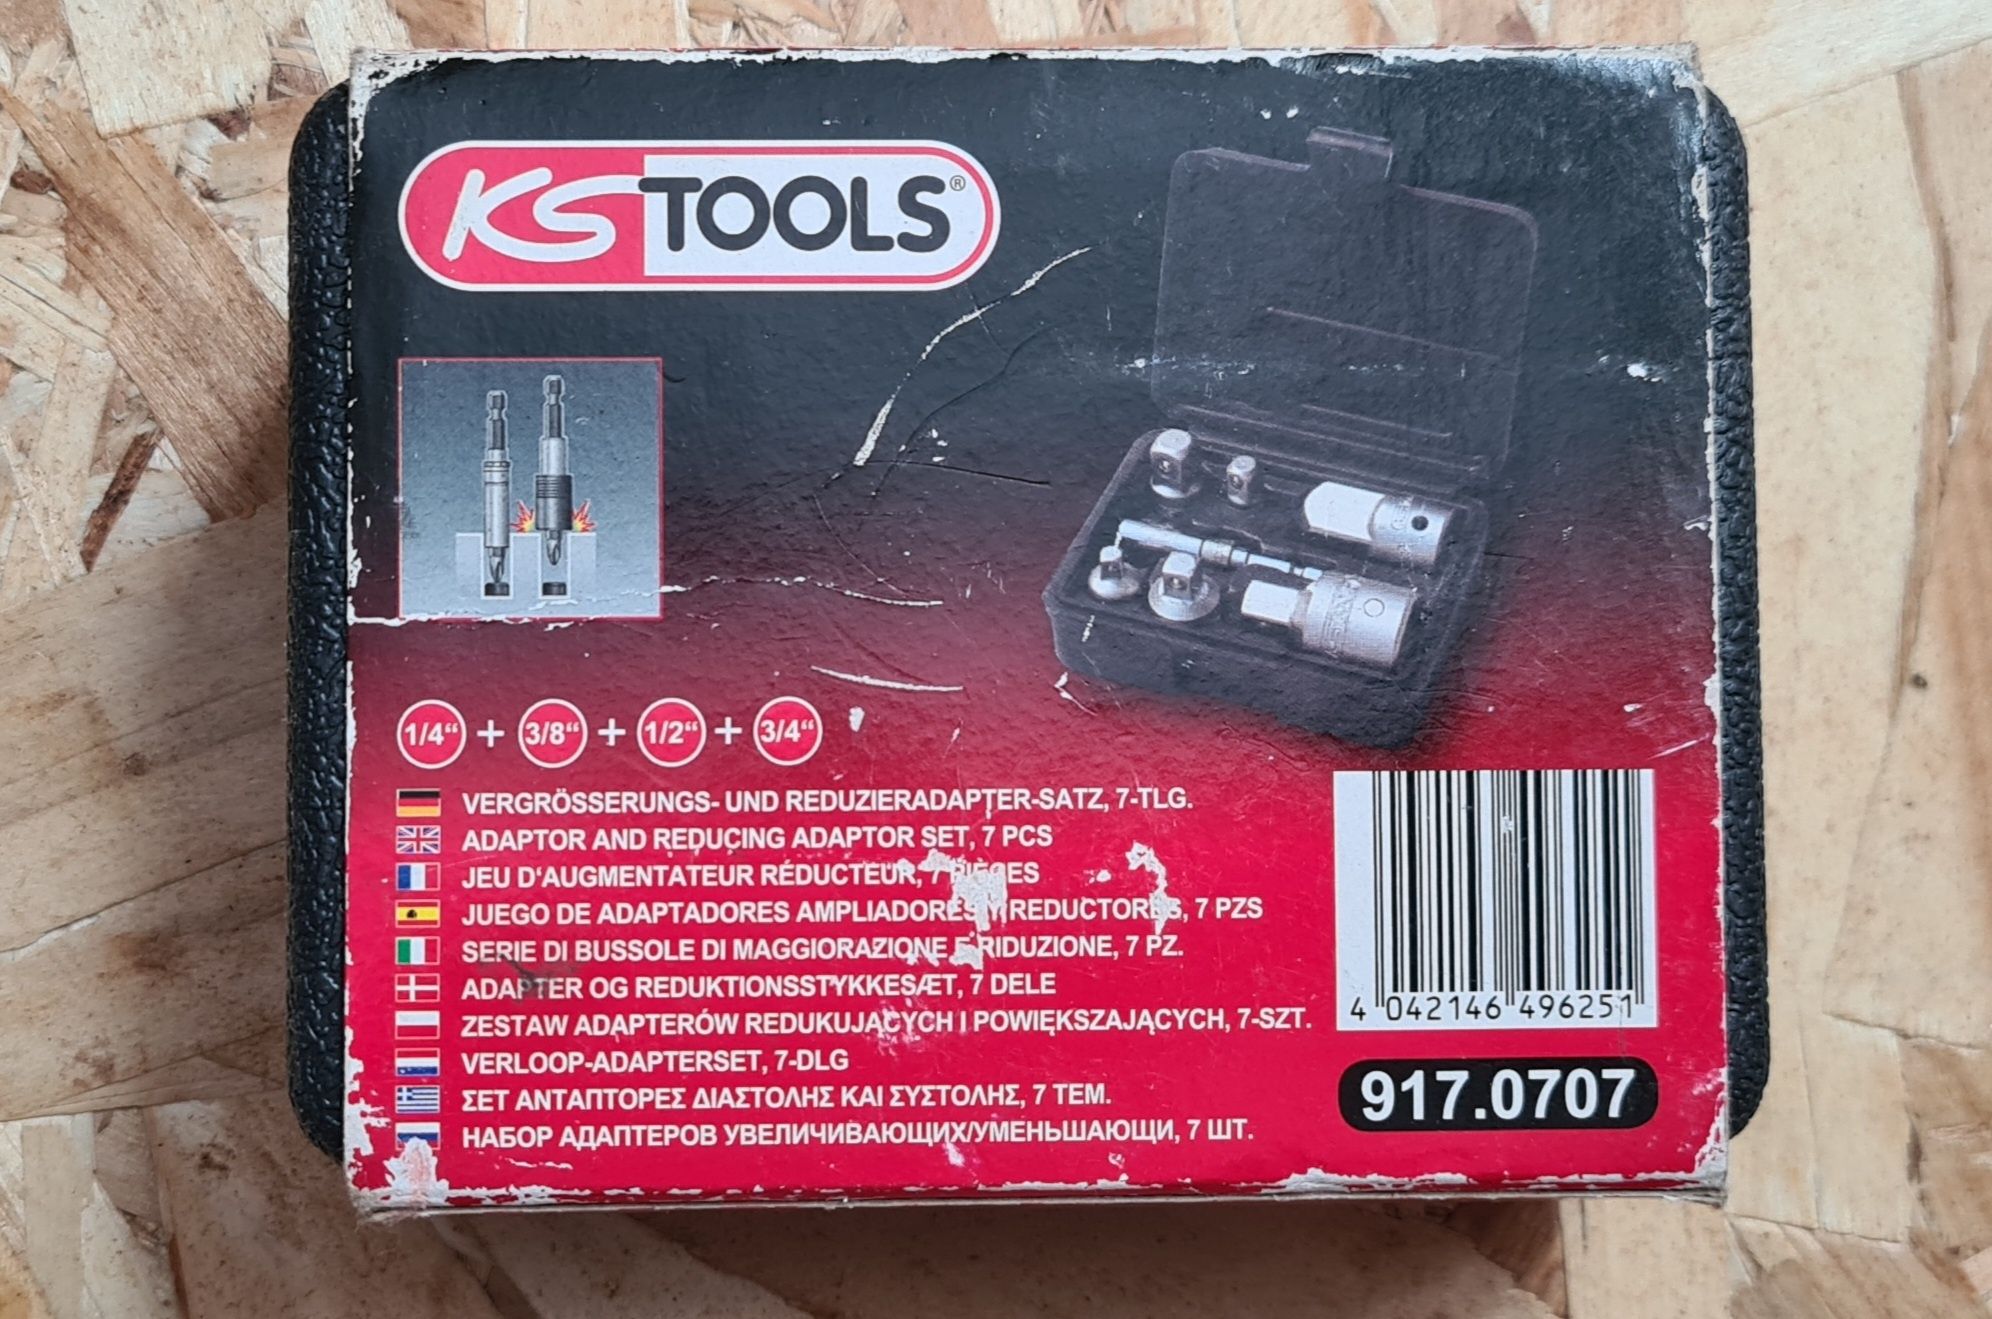 KS Tools 917.0707 Vergrößerungs- und Reduzieradapter-Satz, 7-tlg